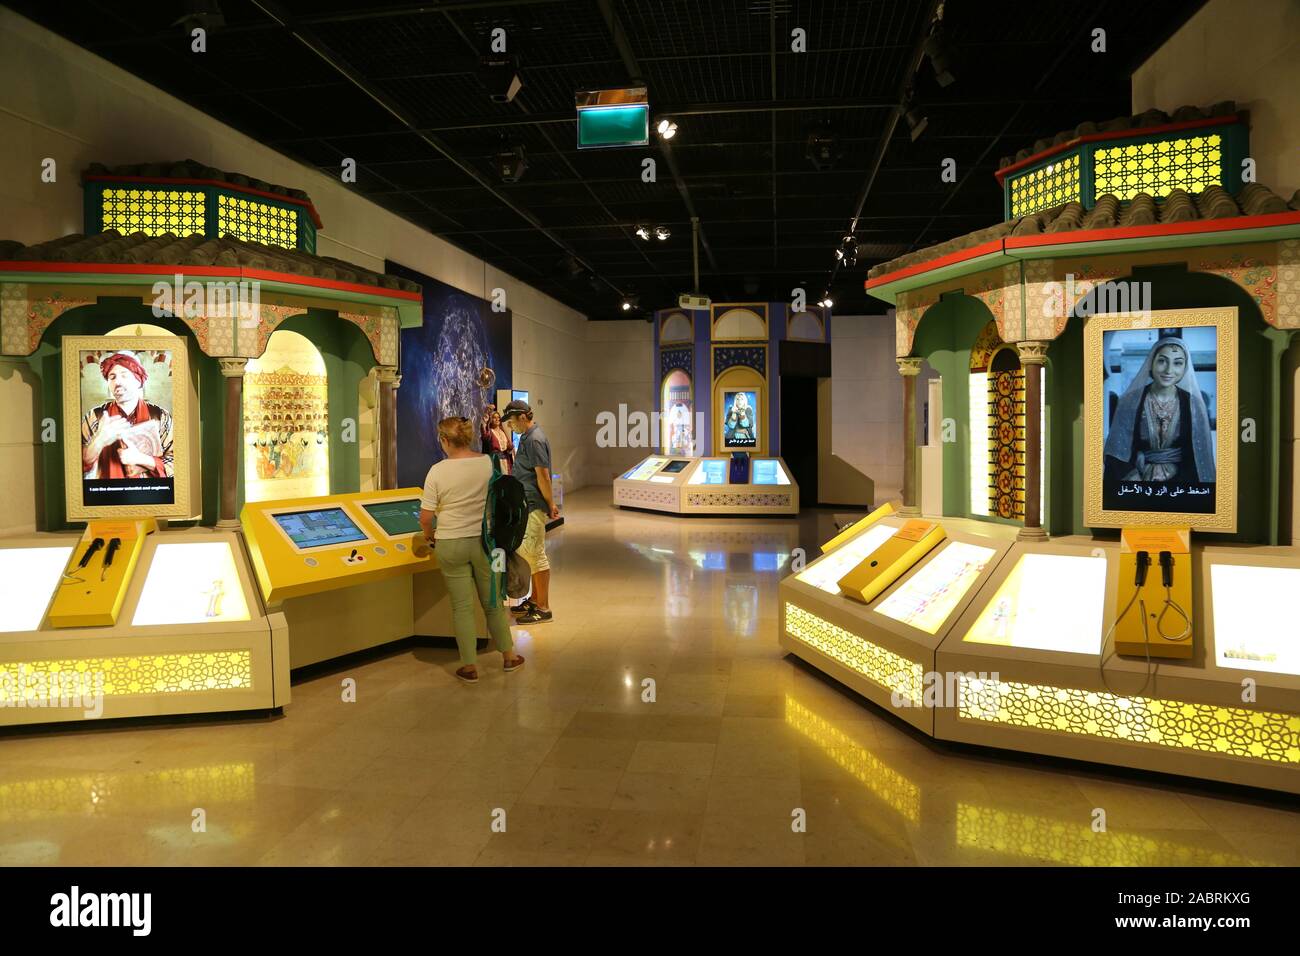 1001 Feria De Invenciones, Museo De Jordania, Calle Ali Ibn Abi Talib, Ras Al Ain, Ammán, Jordania, Oriente Medio Foto de stock